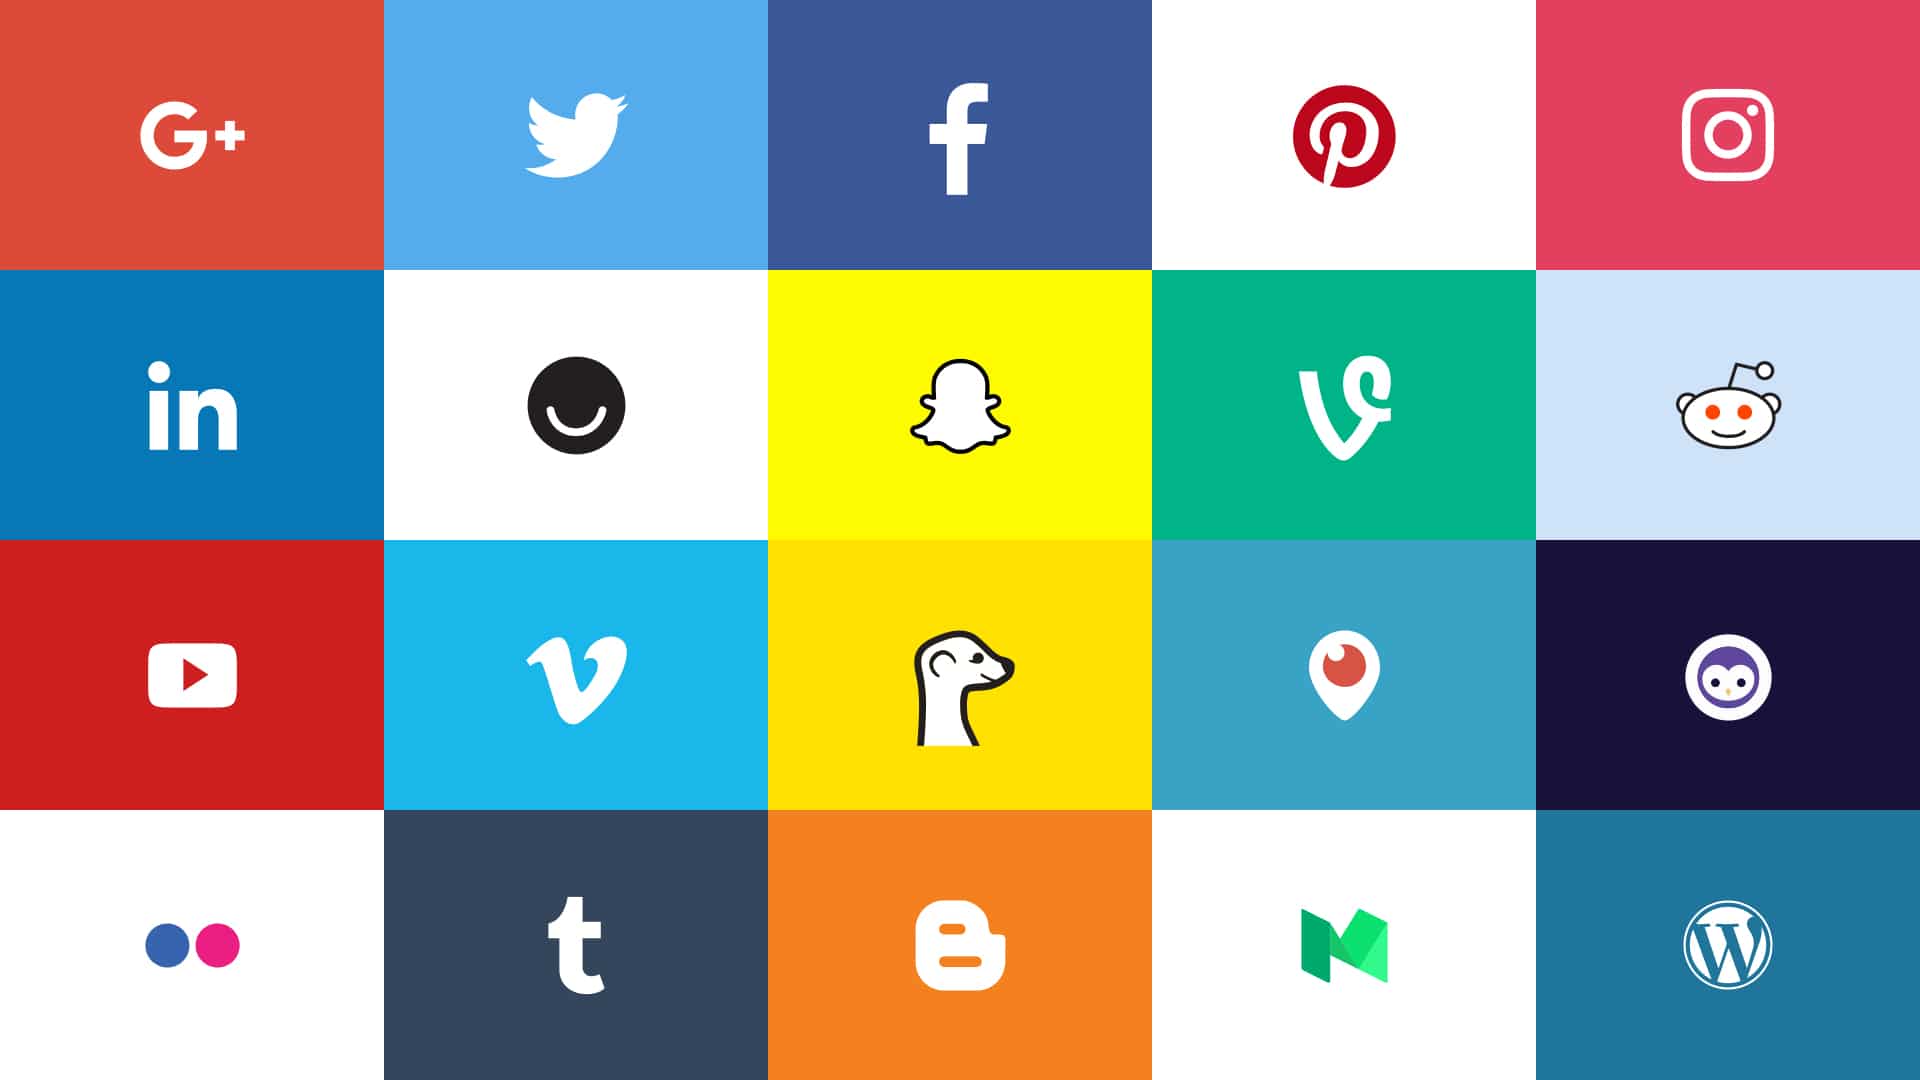 Blue Social Media Logo - Social Media Logos 2017: Top 20 Networks Official Assets • Dustn.tv